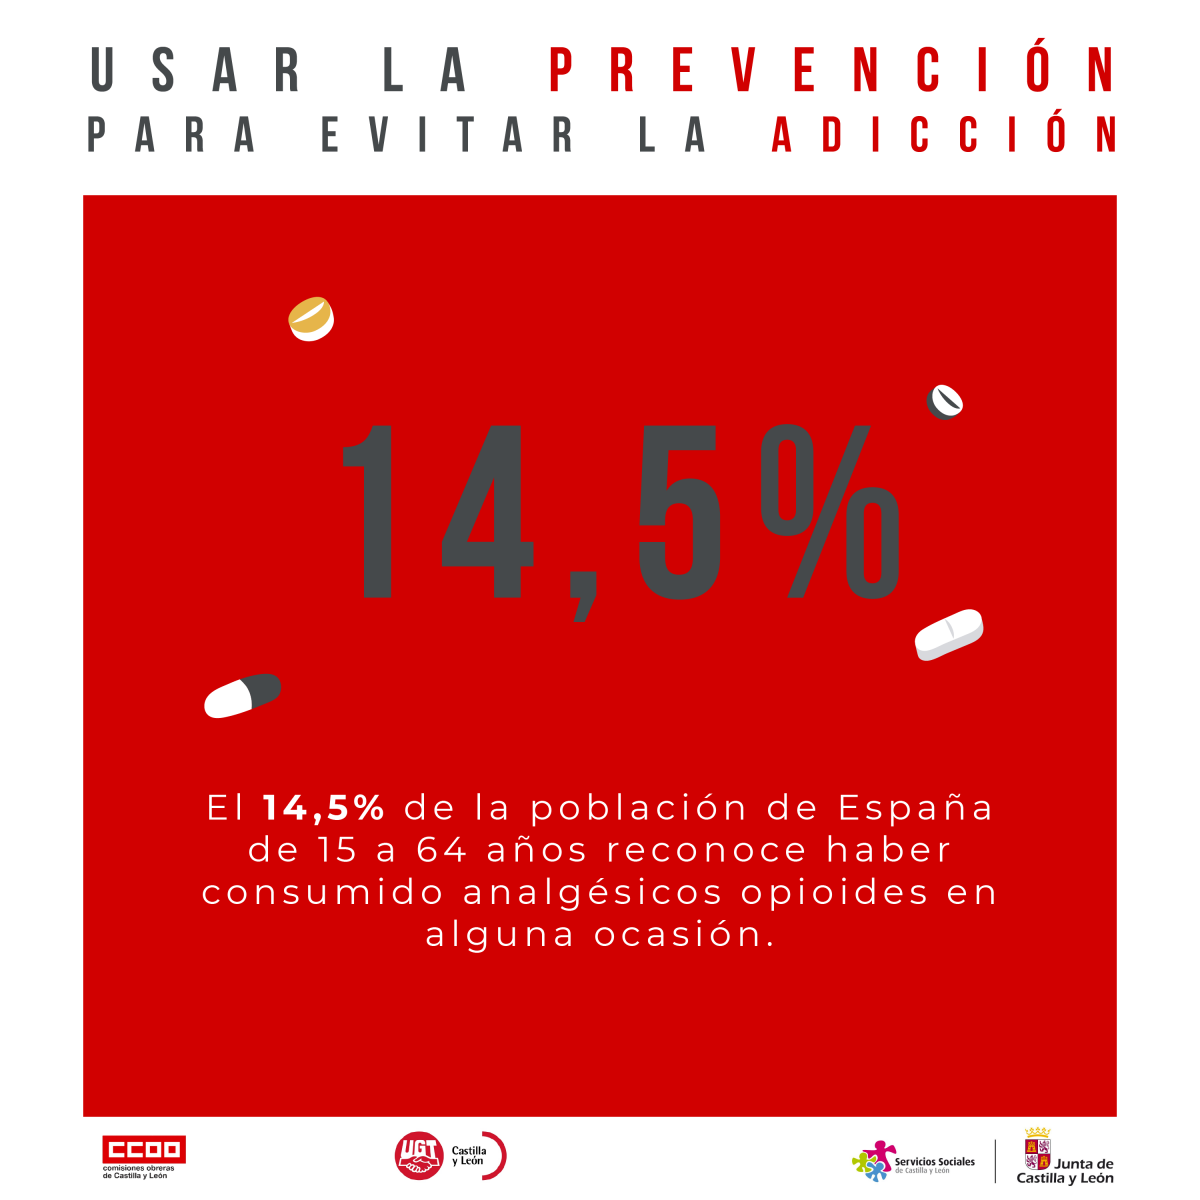 Campaña "Usar la prevención para evitar la adicción"